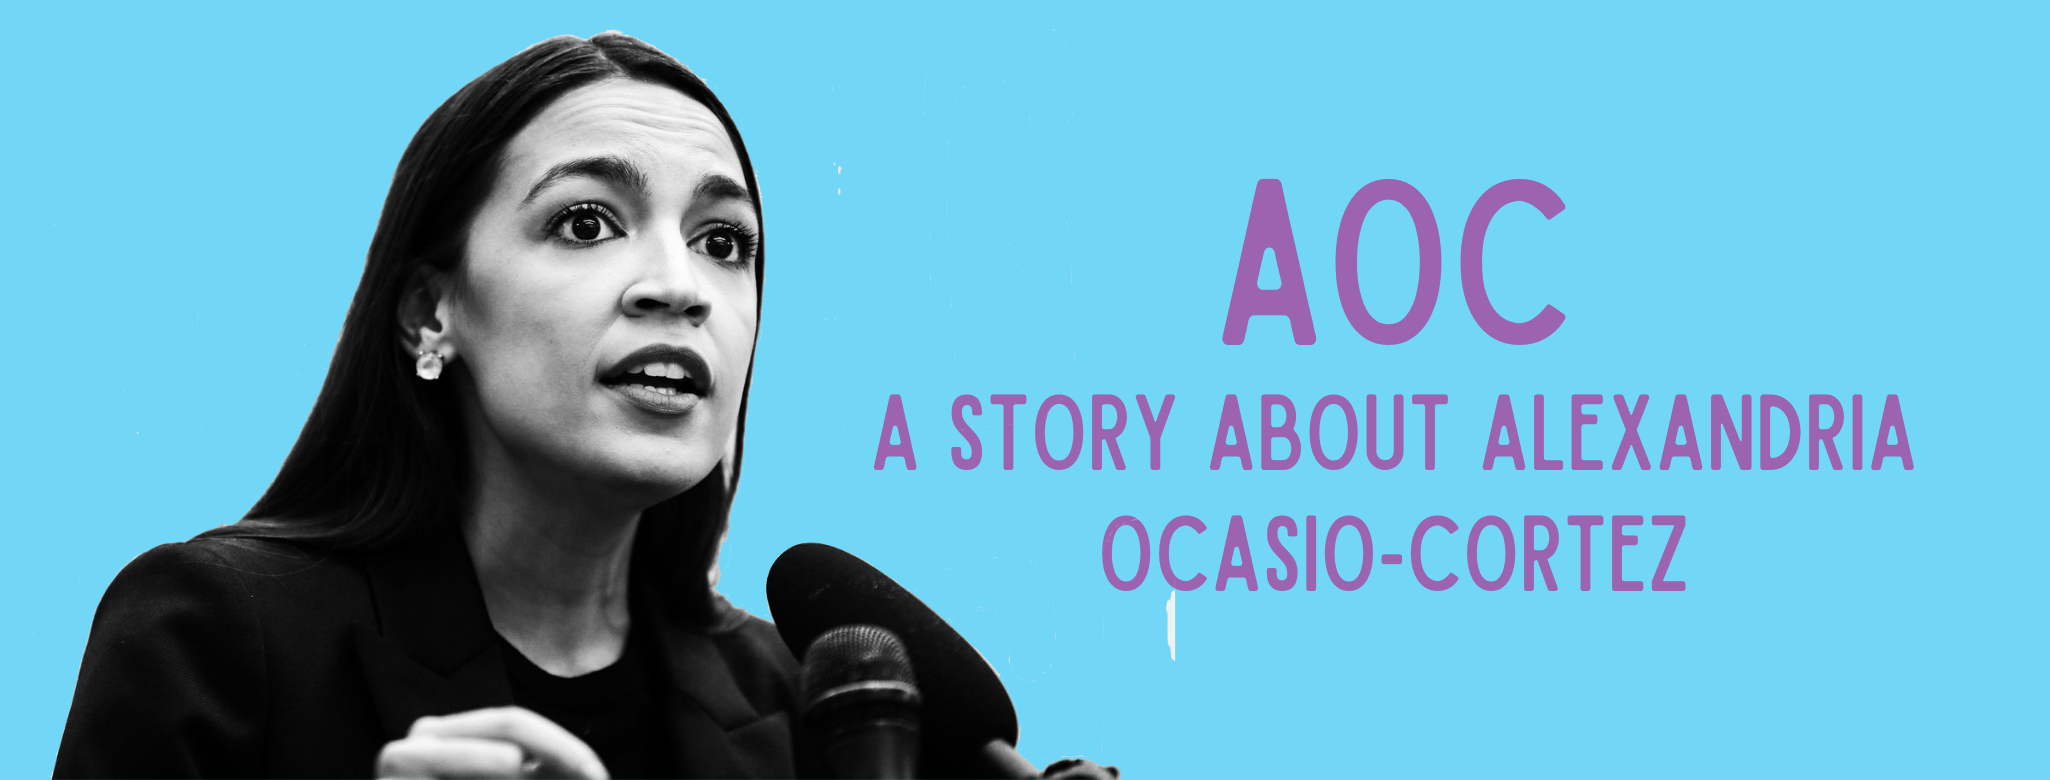 AOC: A Story About Alexandria Ocasio-Cortez